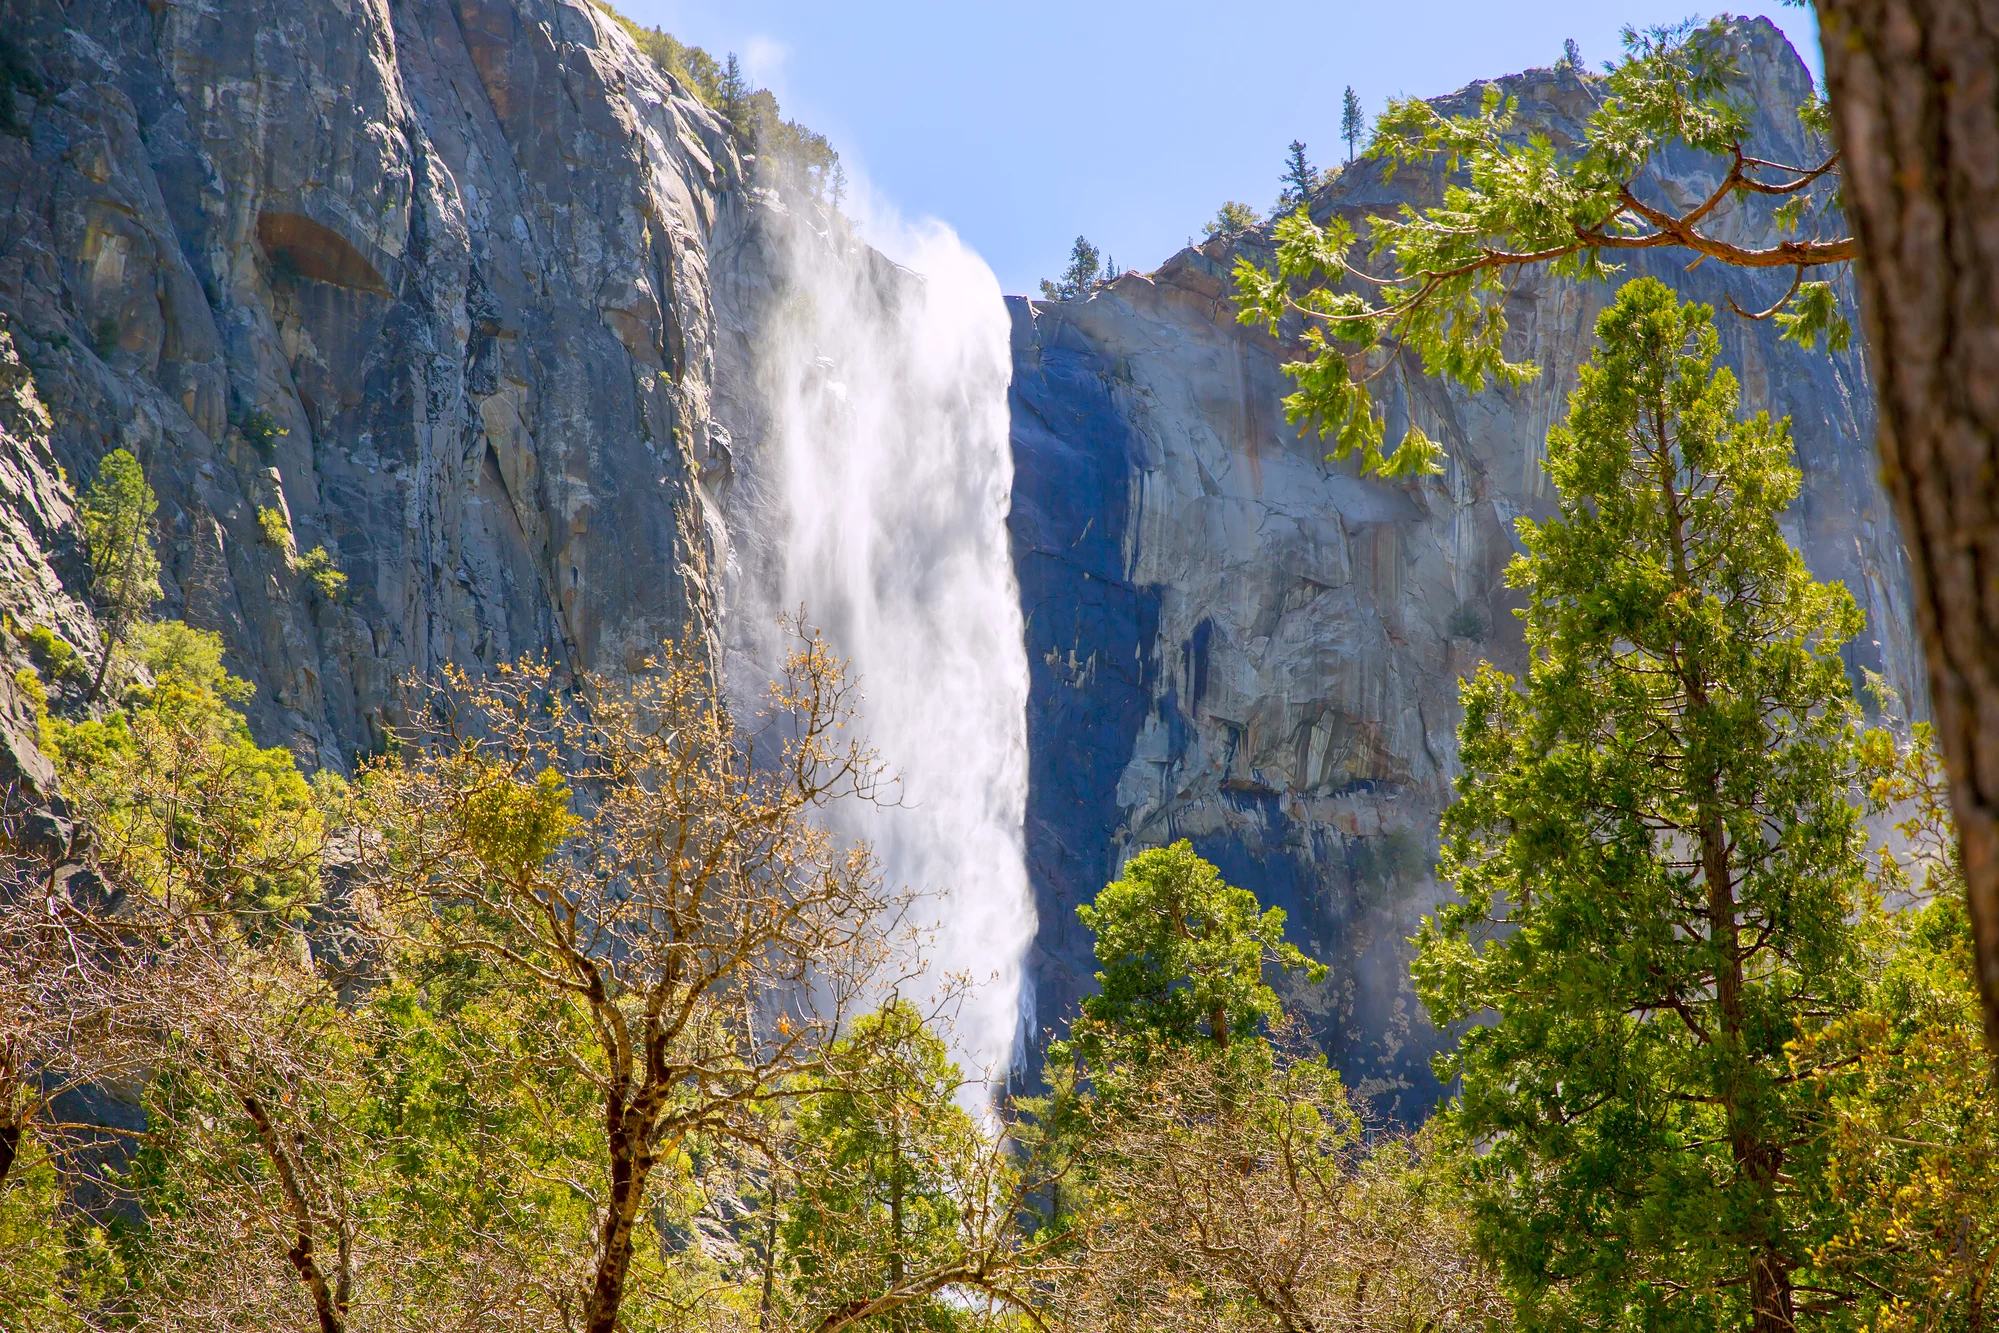 Bridalveil Fall in Yosemite National Park in California.